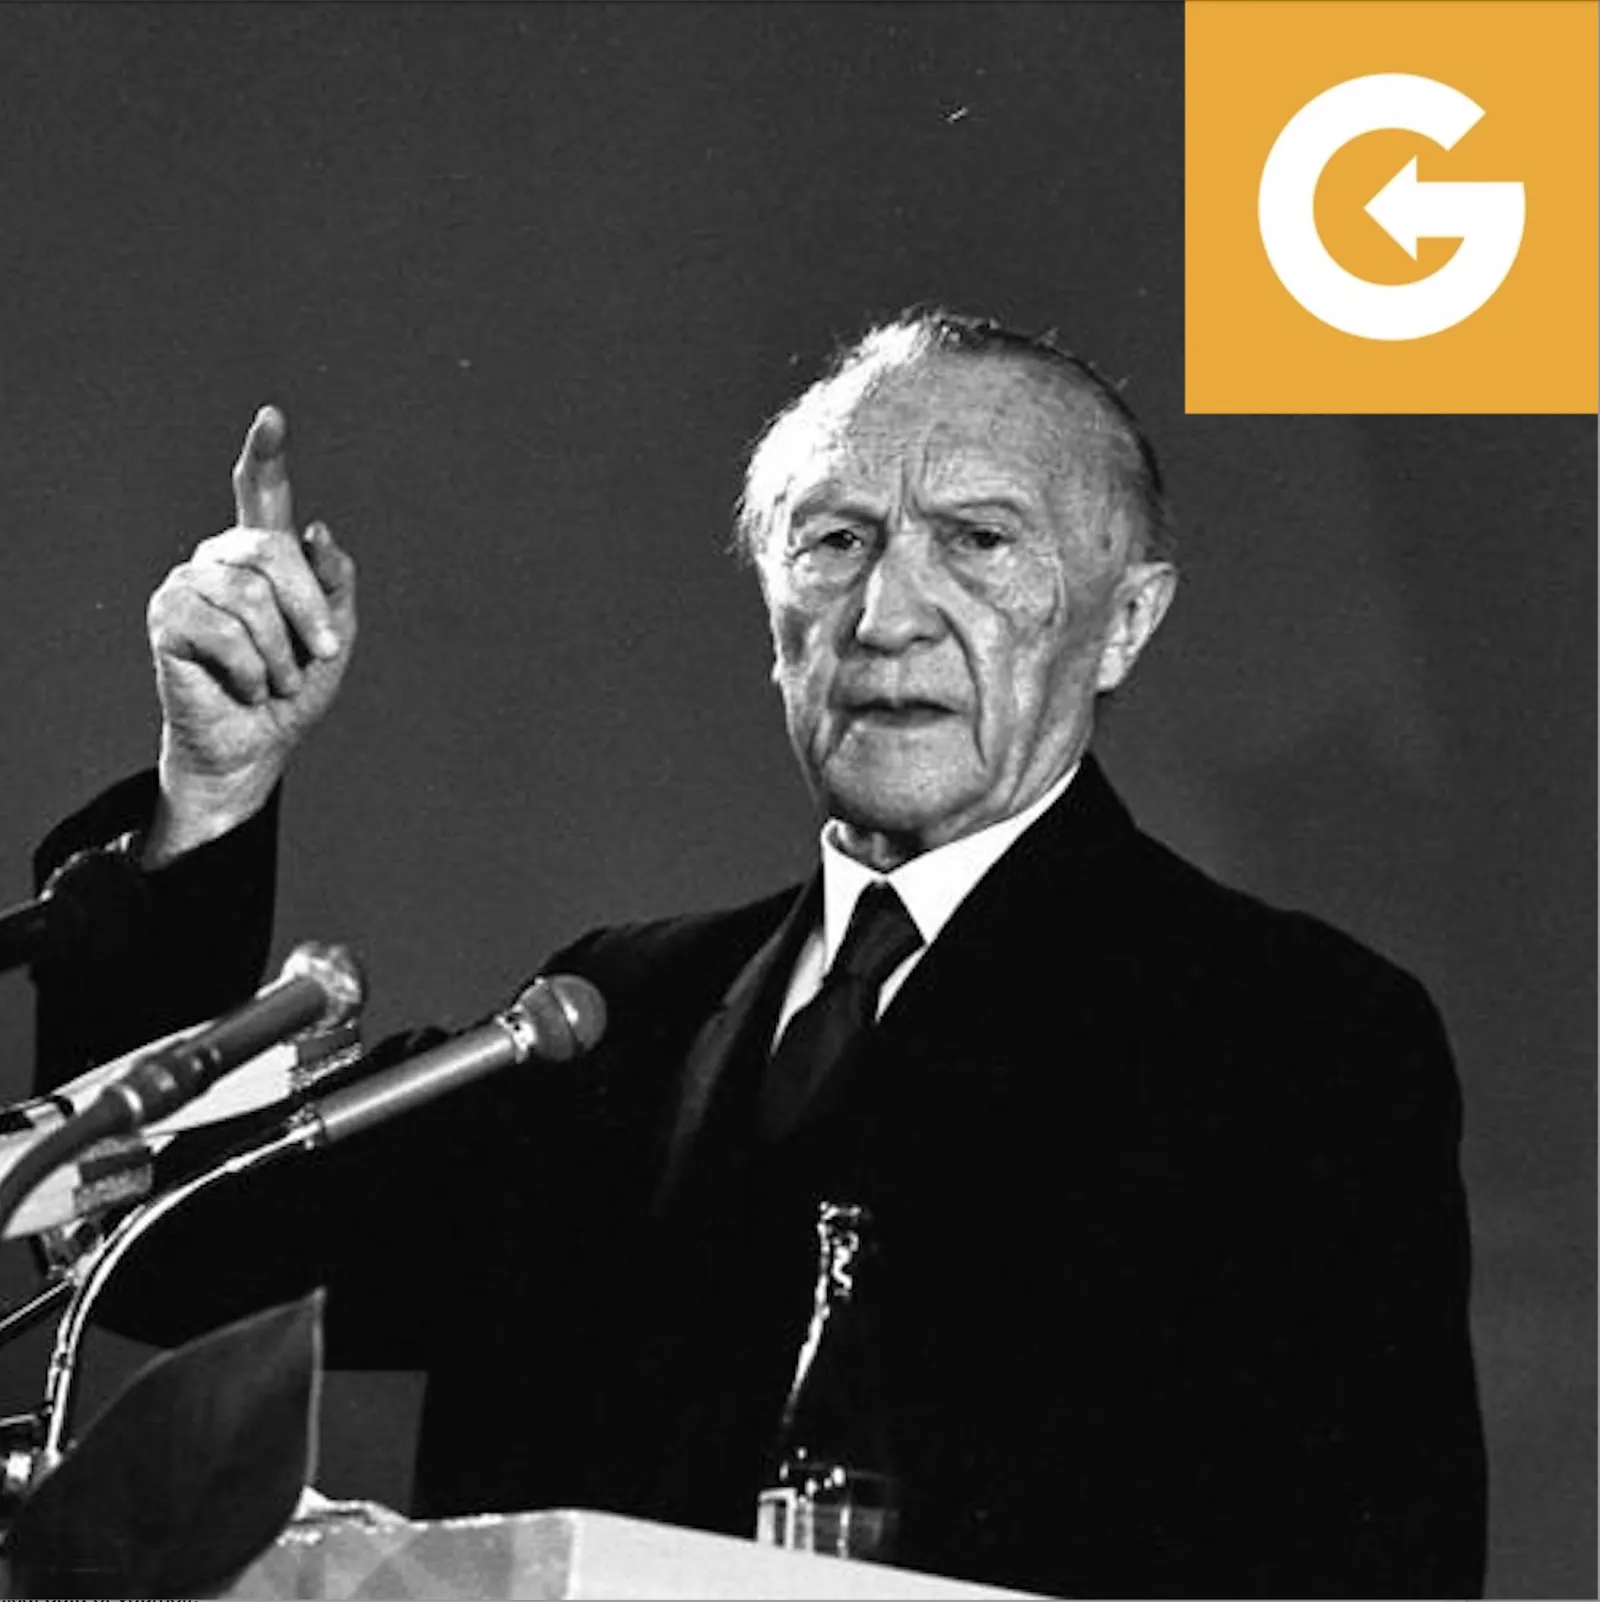 Bundeskanzler Konrad Adenauer bei einer Rede 1953